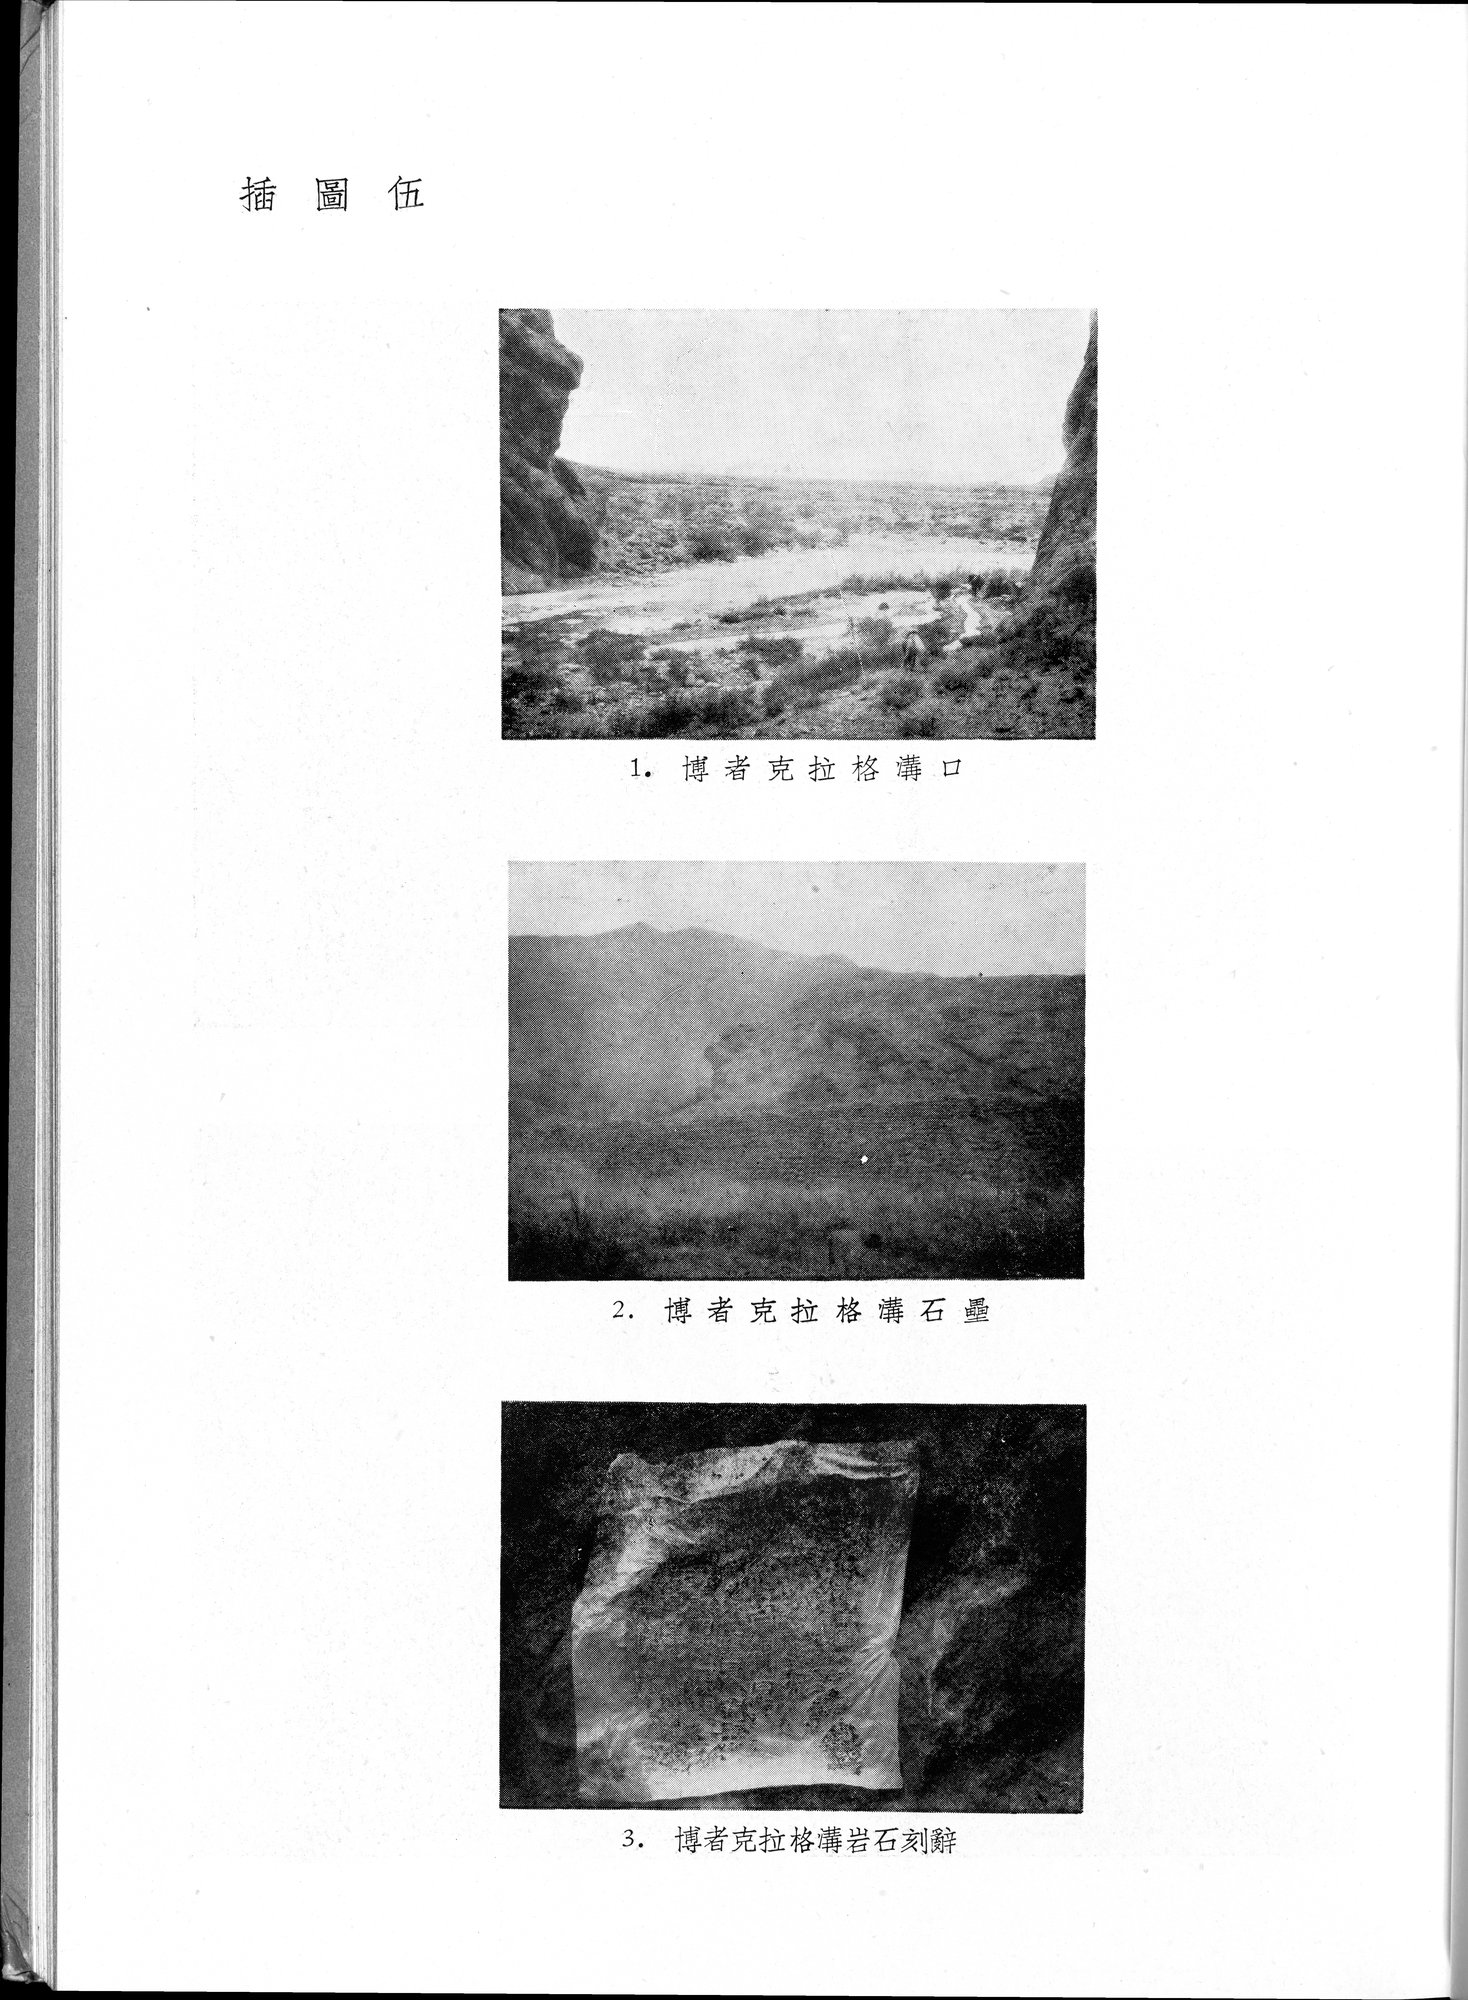 塔里木盆地考古記 : vol.1 / Page 101 (Grayscale High Resolution Image)